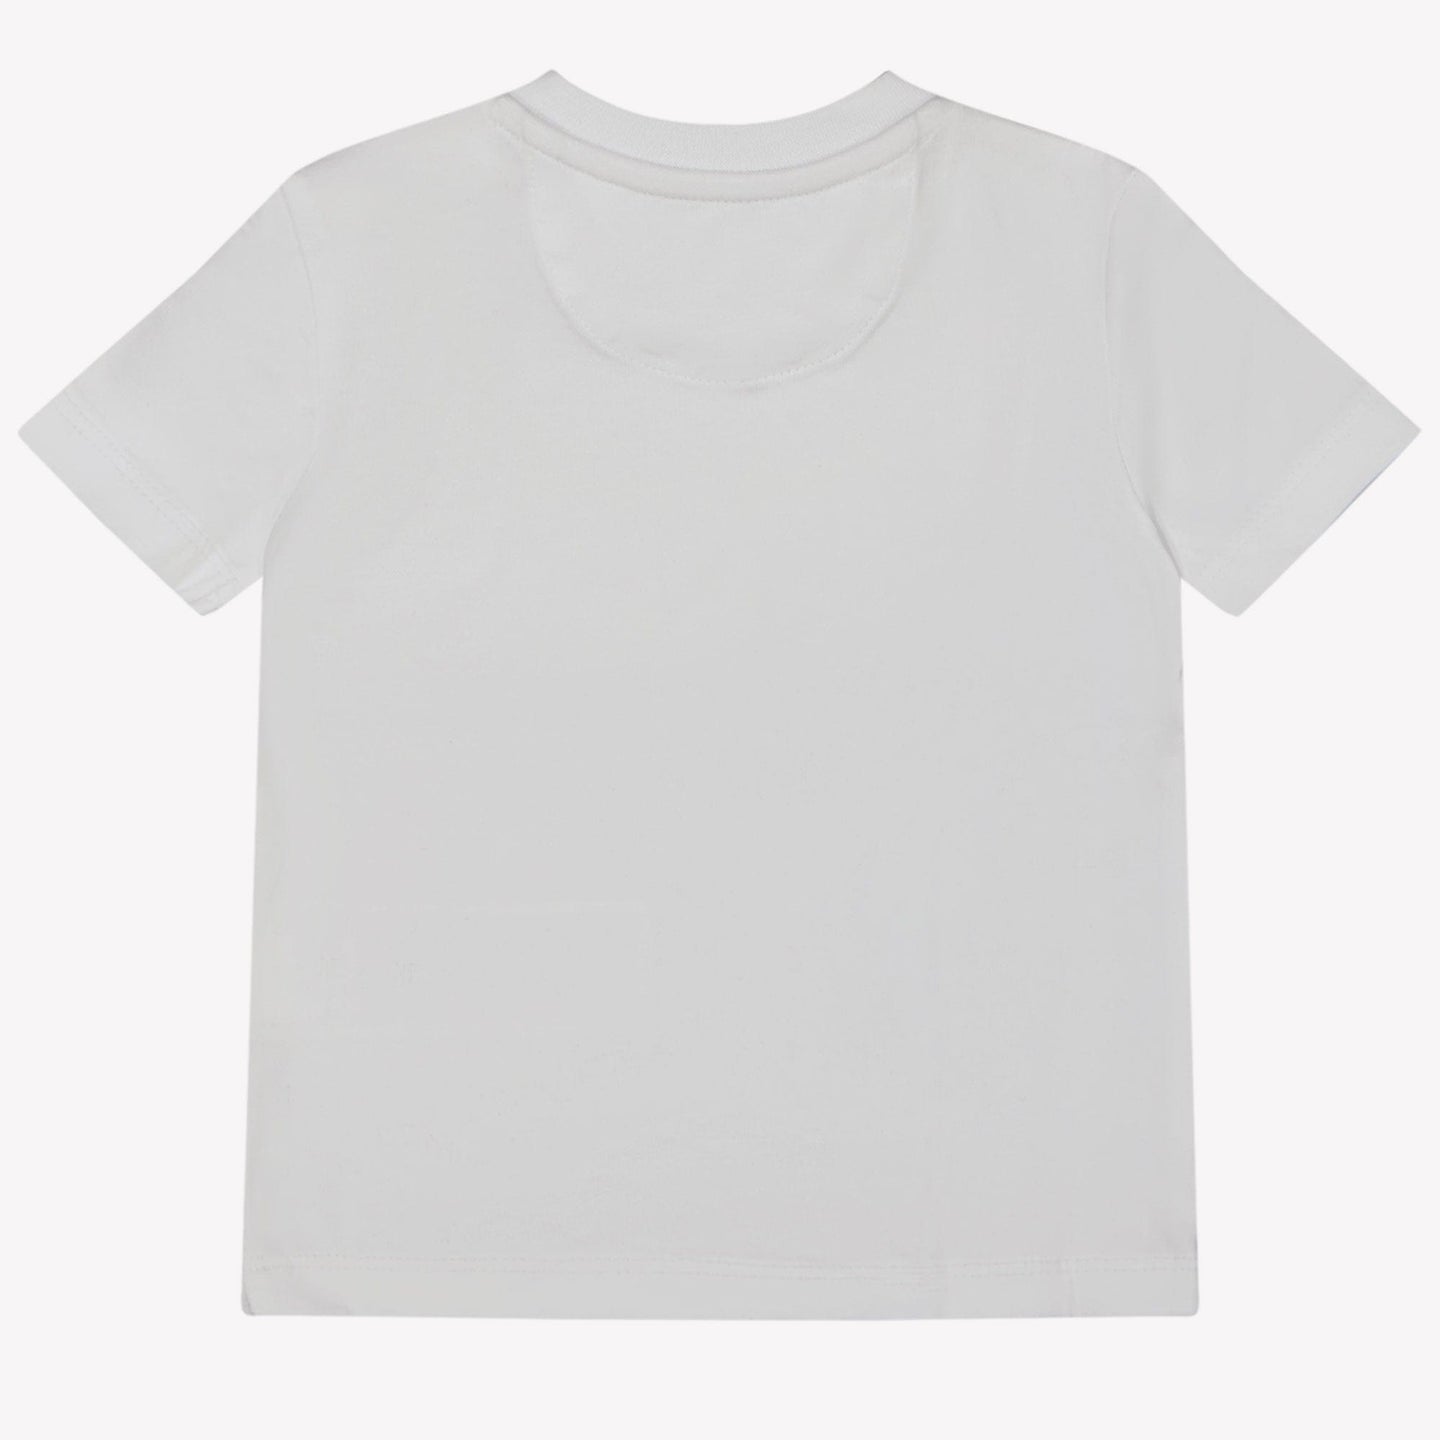 Calvin Klein Baby Jongens T-shirt Wit 62